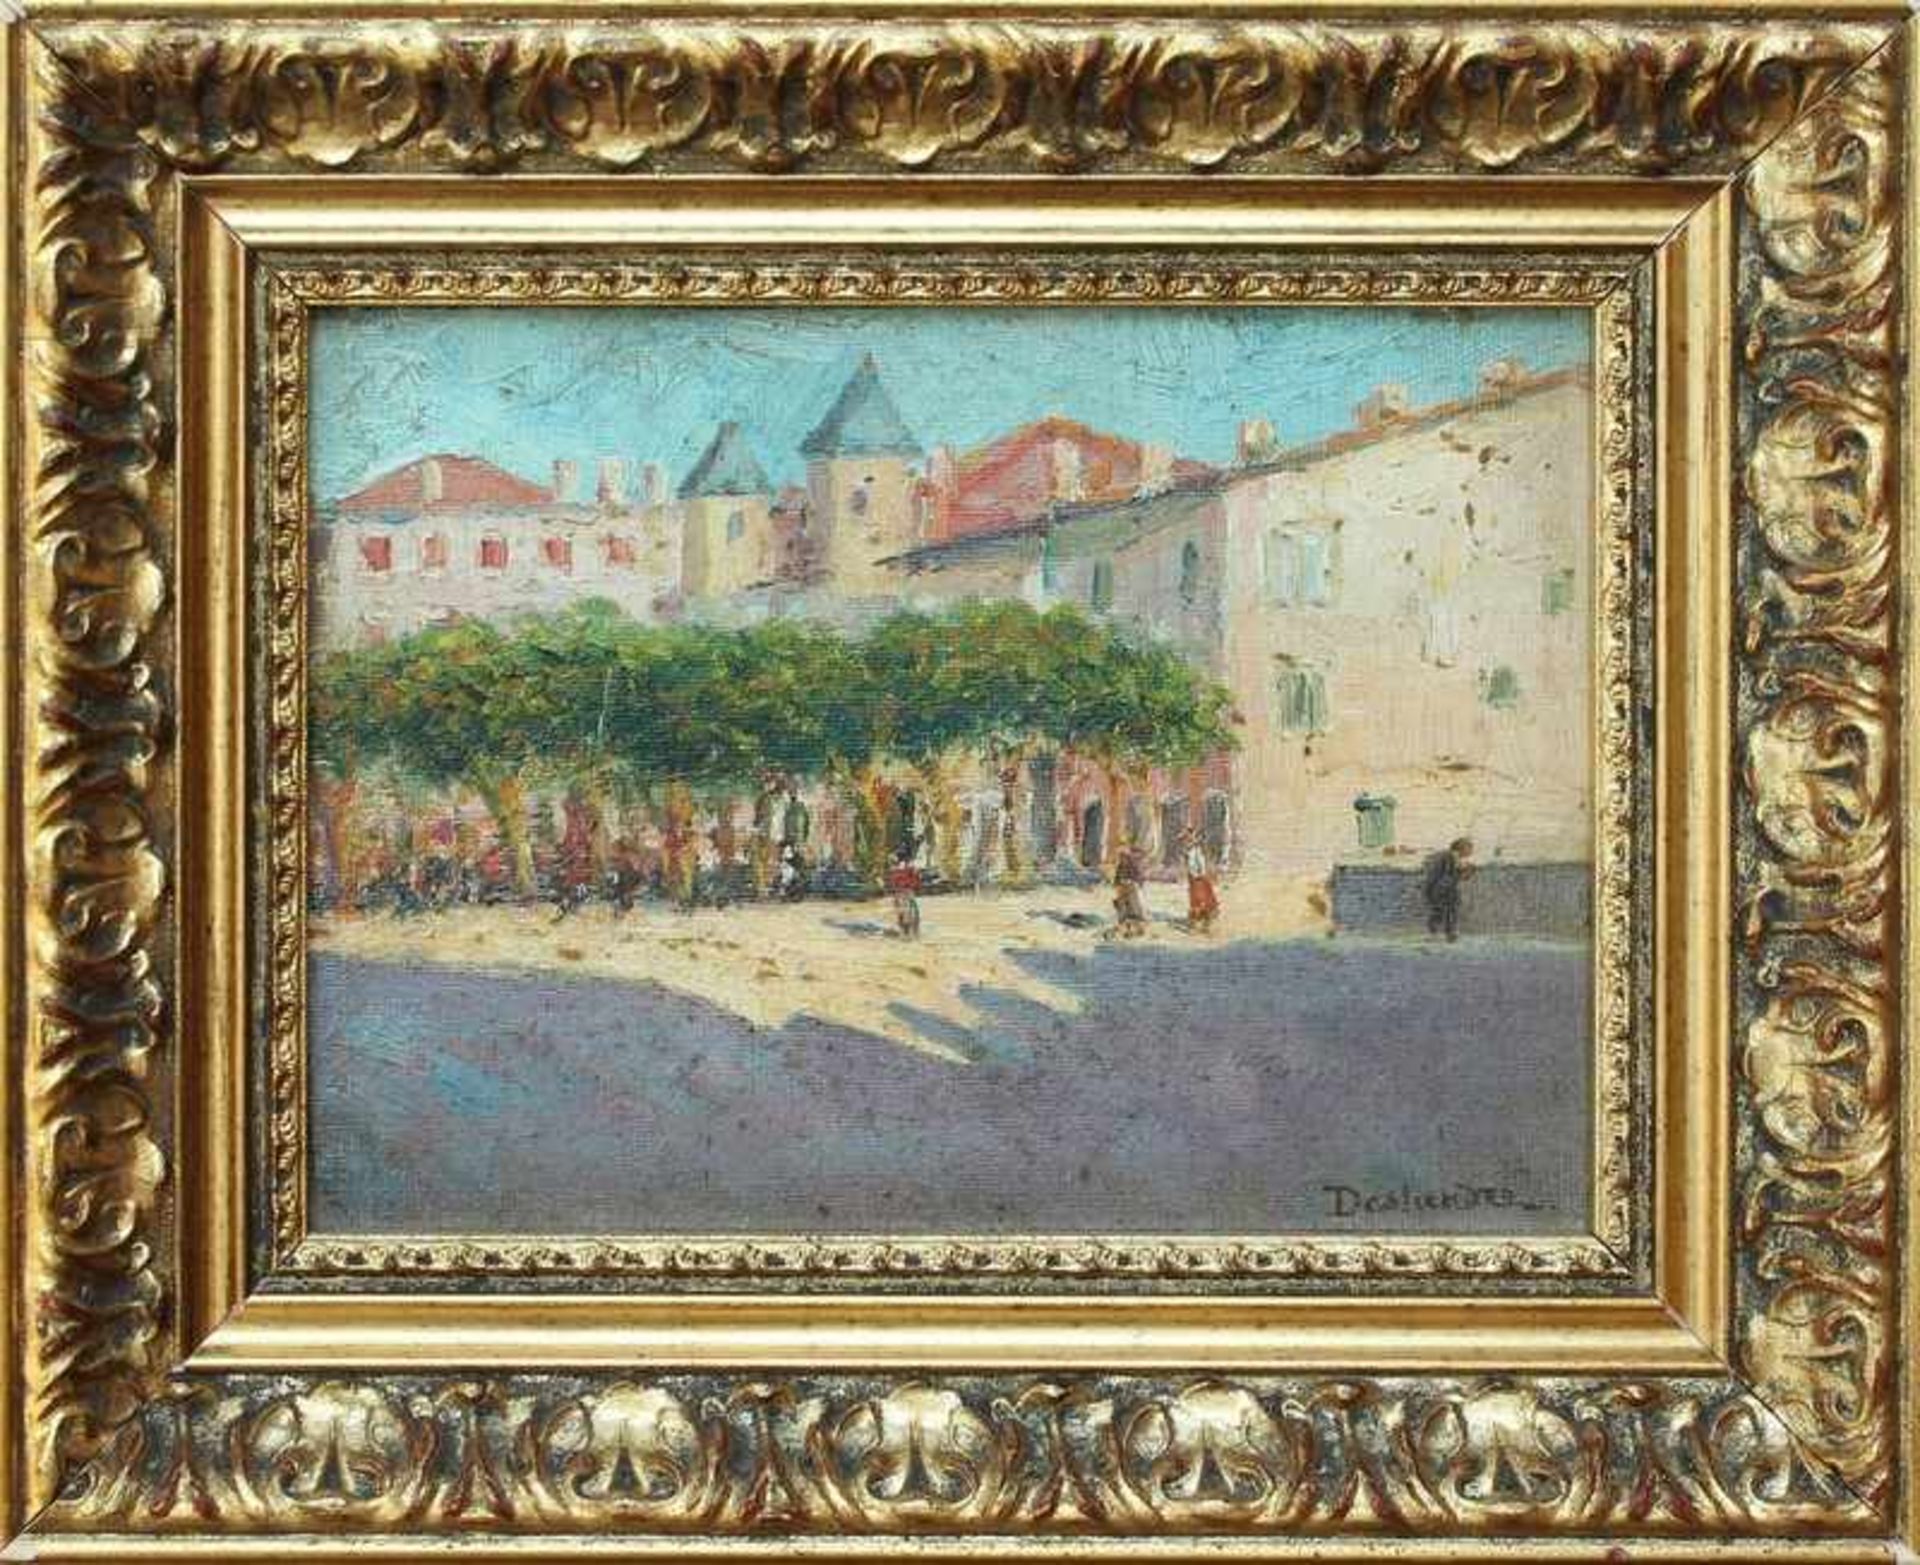 Deslandre, CharlesFrankreich um 1920/30, "Sommerliche Marktszene", Öl/Malkarton, warme Farbpalette